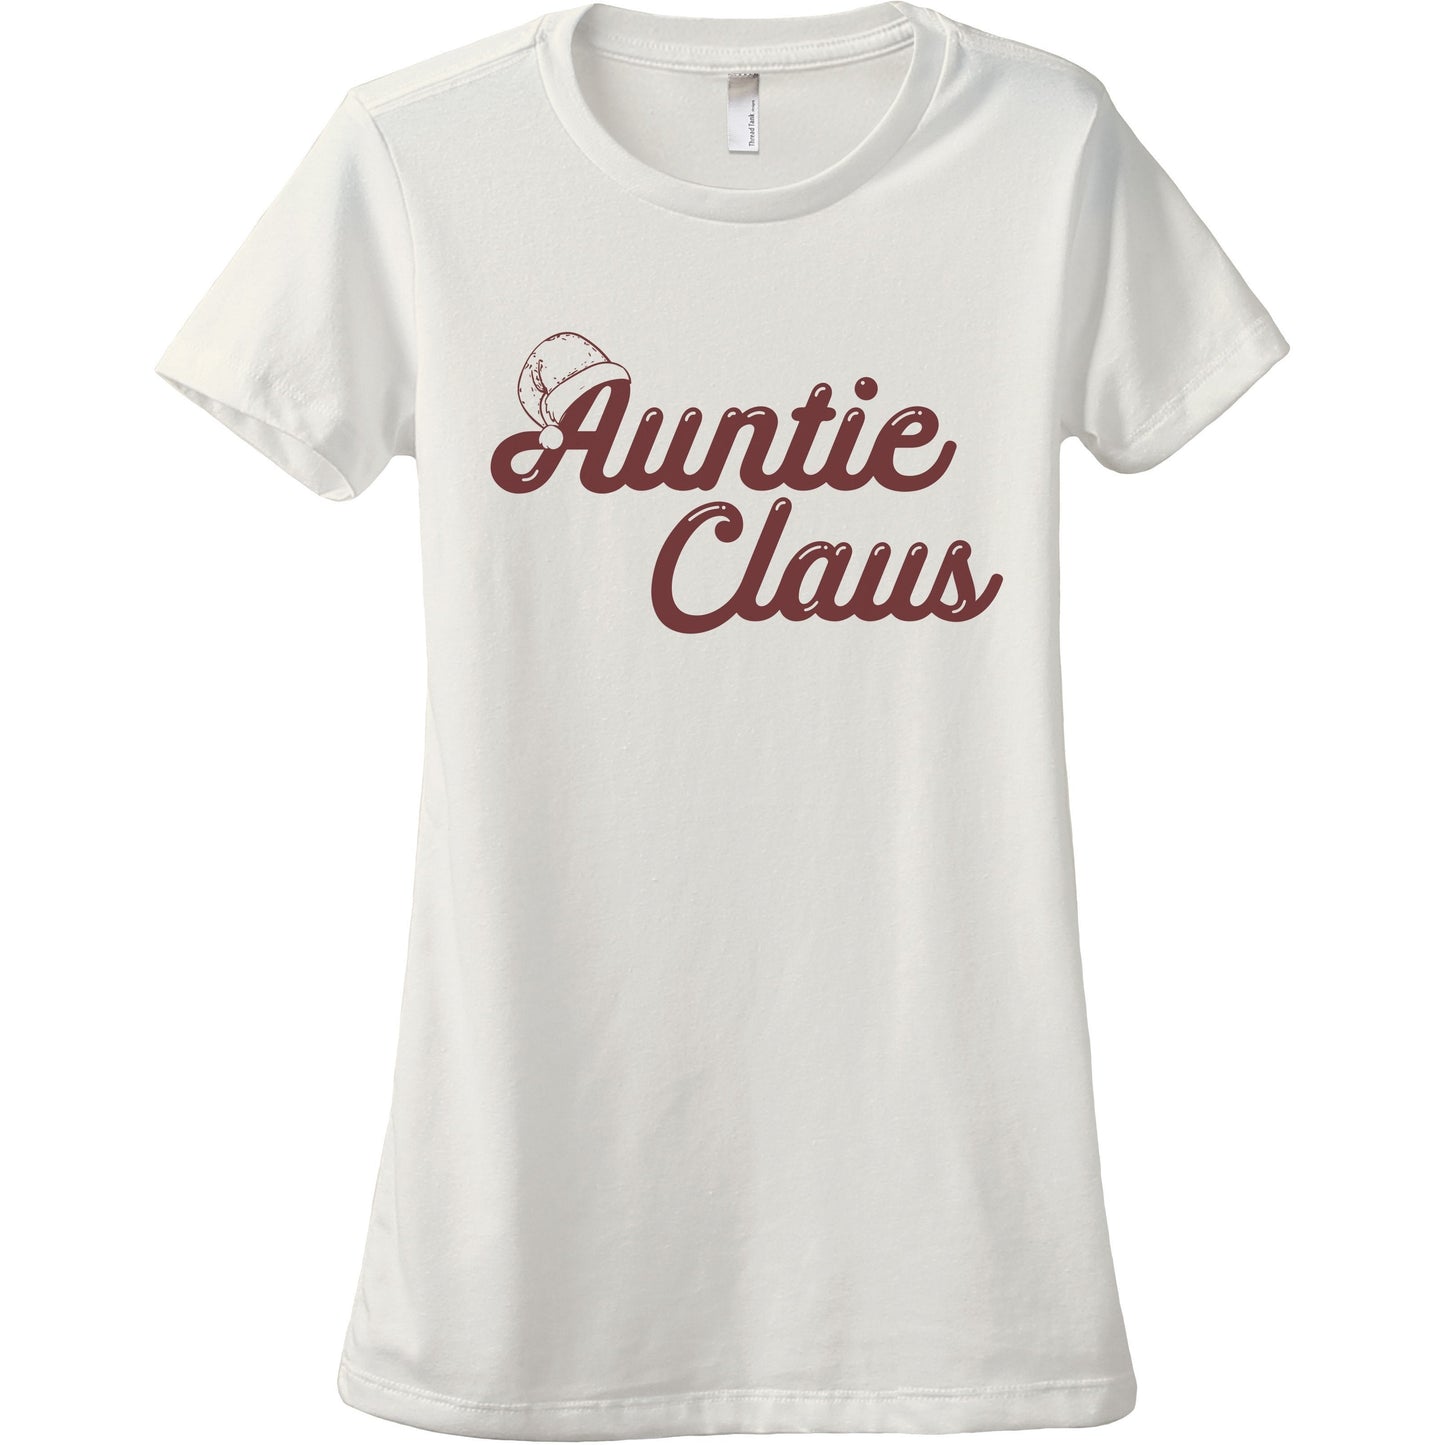 Auntie Claus